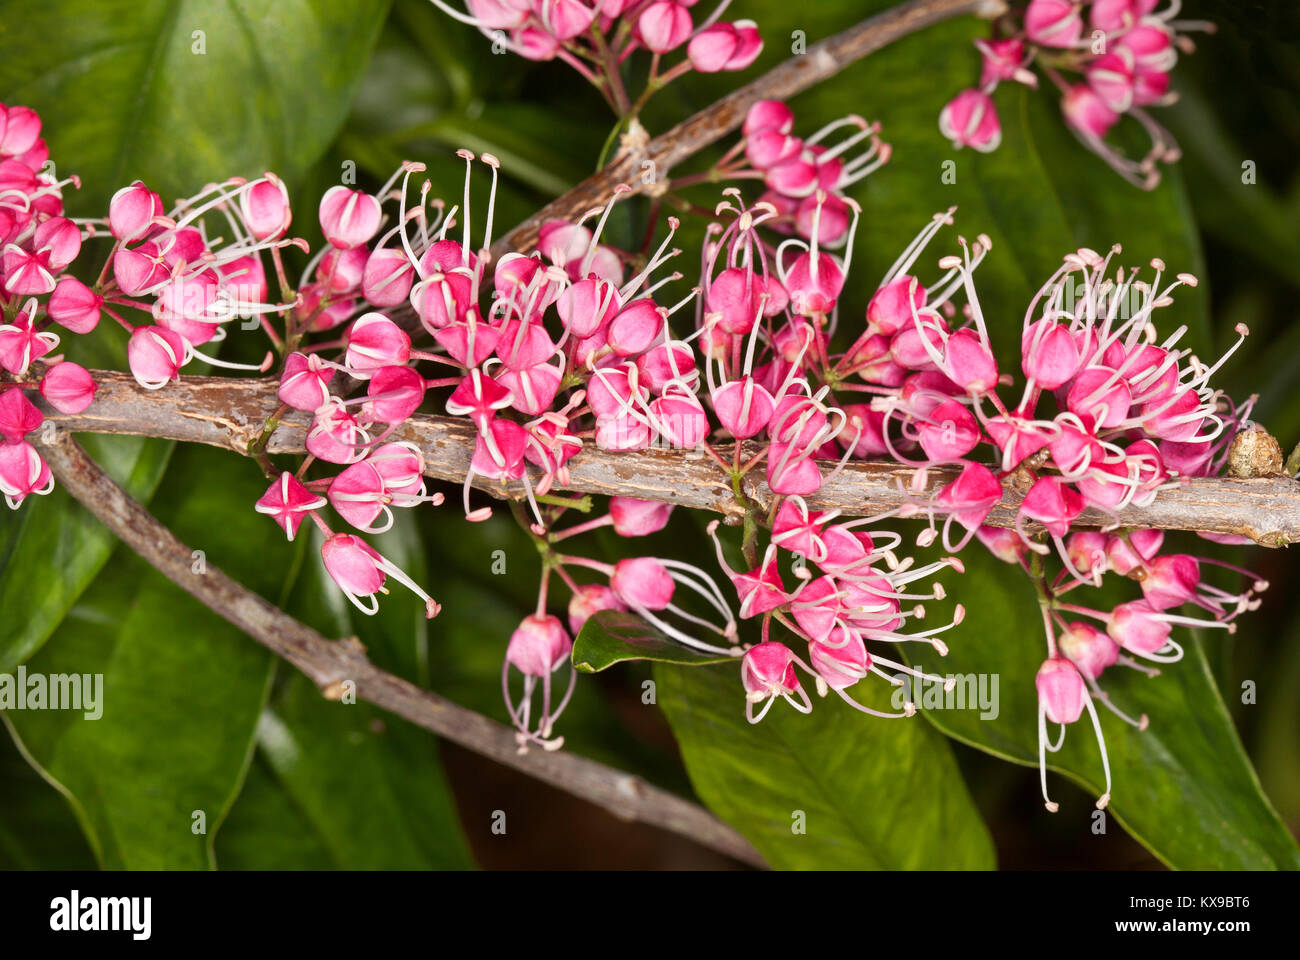 Des grappes de fleurs rose vif de corkwood australiennes indigènes arbre, Evodiella muelleri / Melicope rubra contre l'arrière-plan de feuilles vertes Banque D'Images